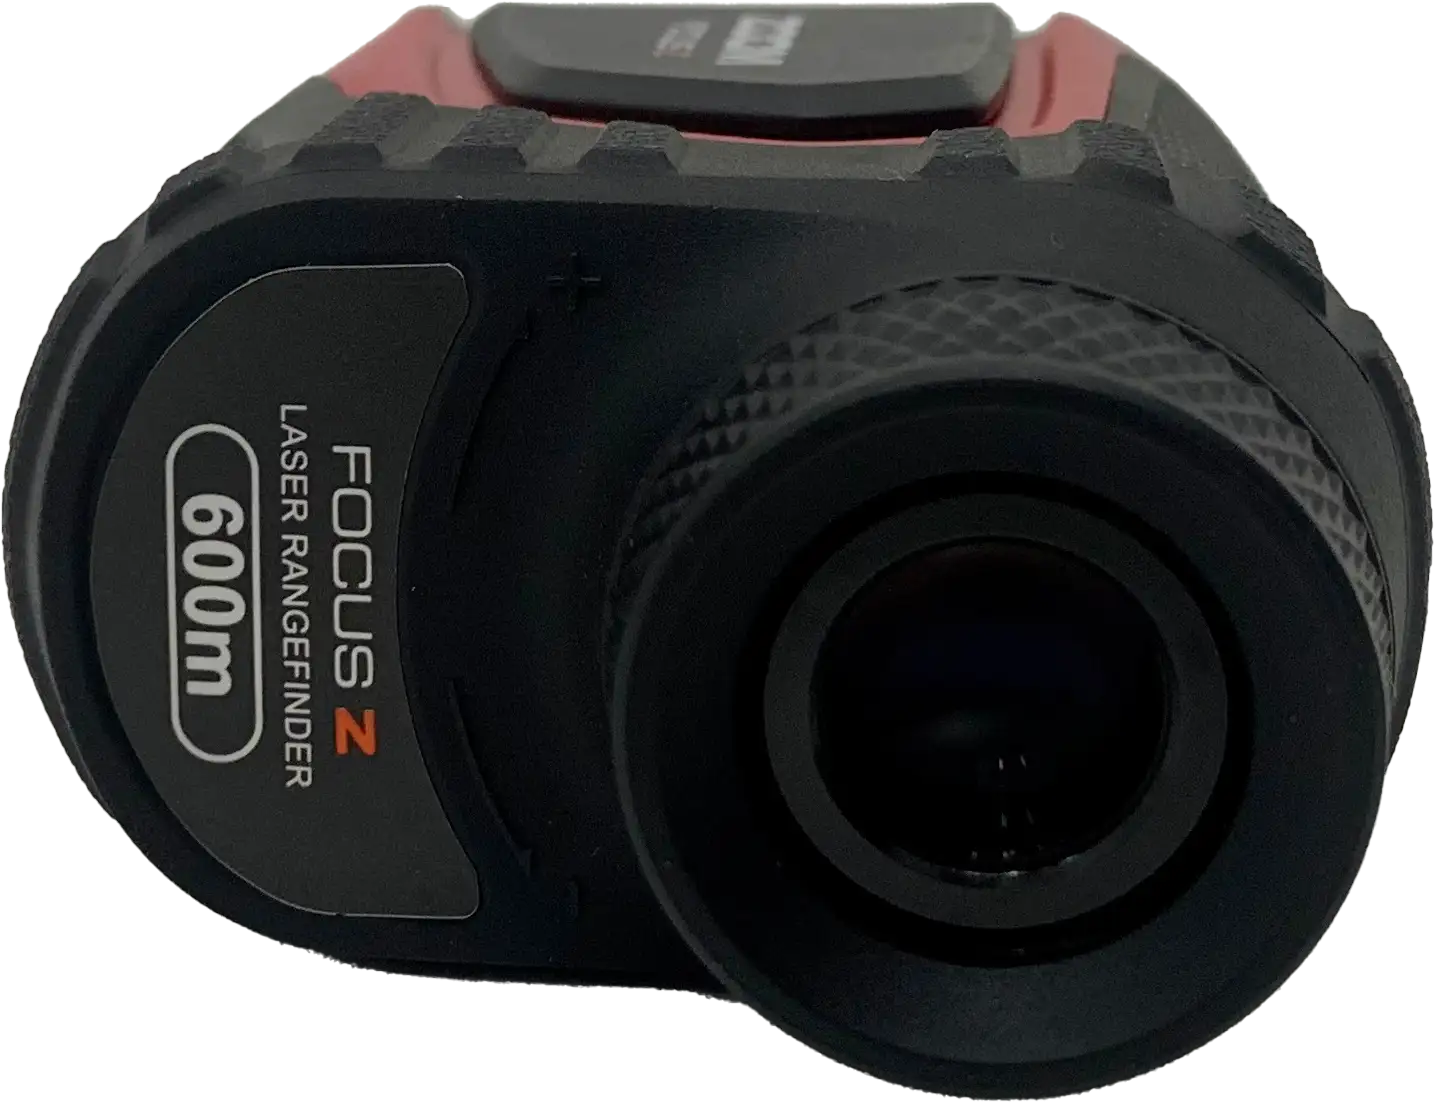 Zoom Focus Z Laser Entfernungsmesser